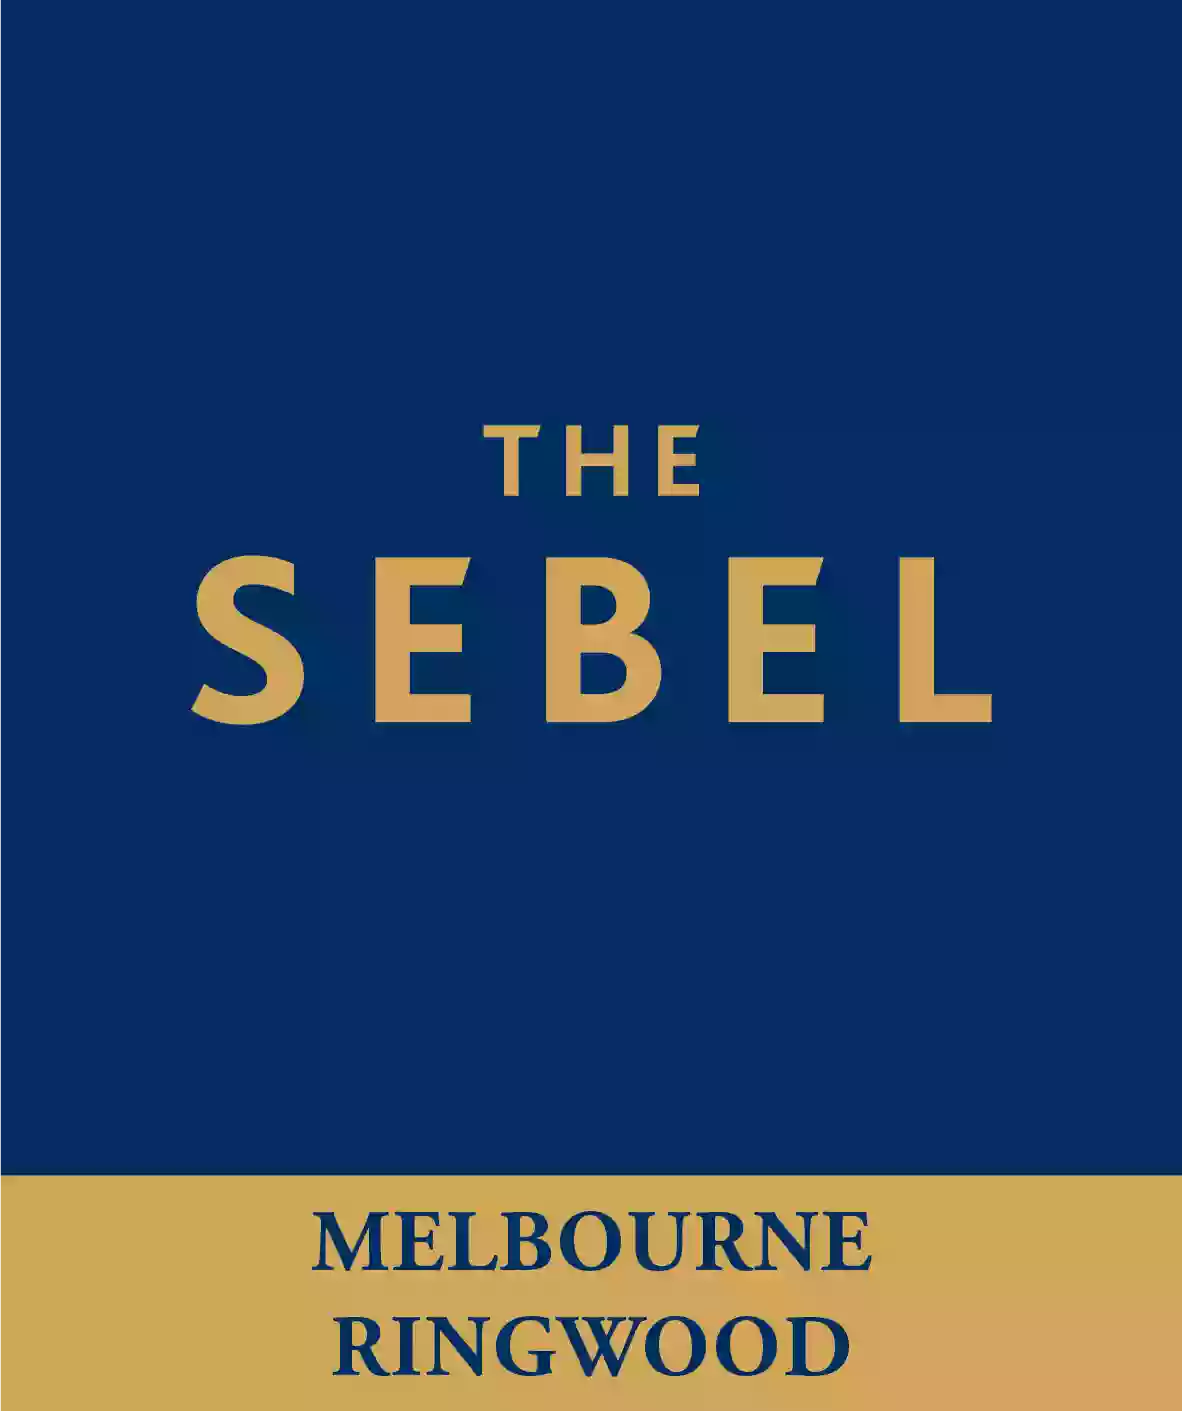 The Sebel Melbourne Ringwood